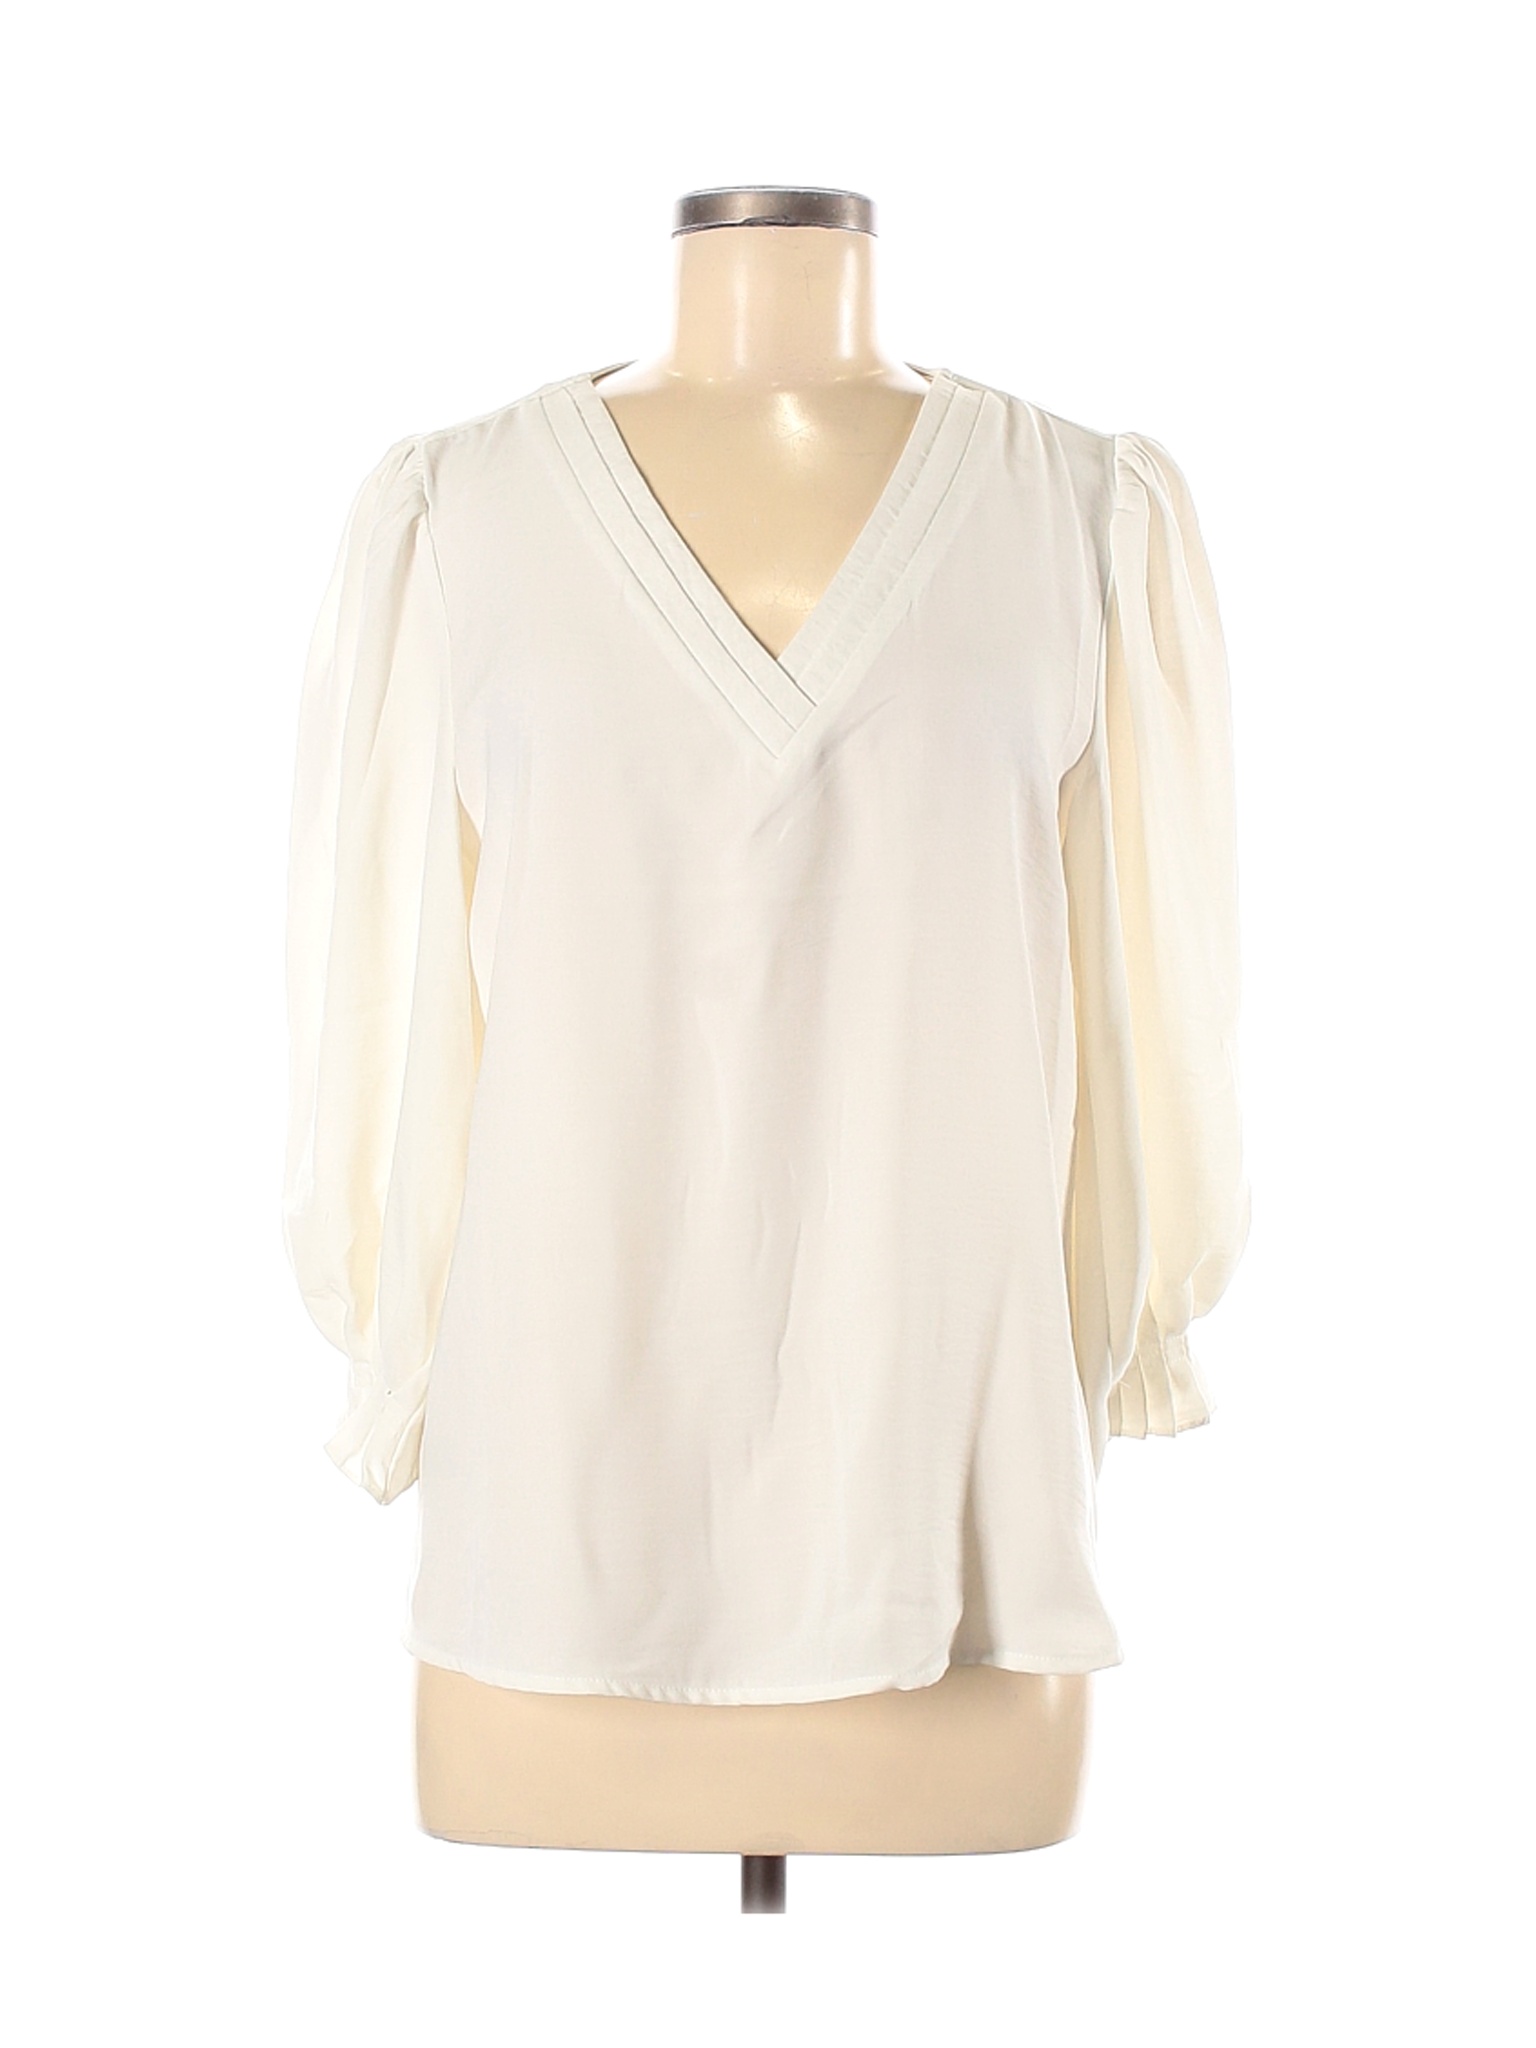 Worthington Women Ivory Long Sleeve Blouse M | eBay